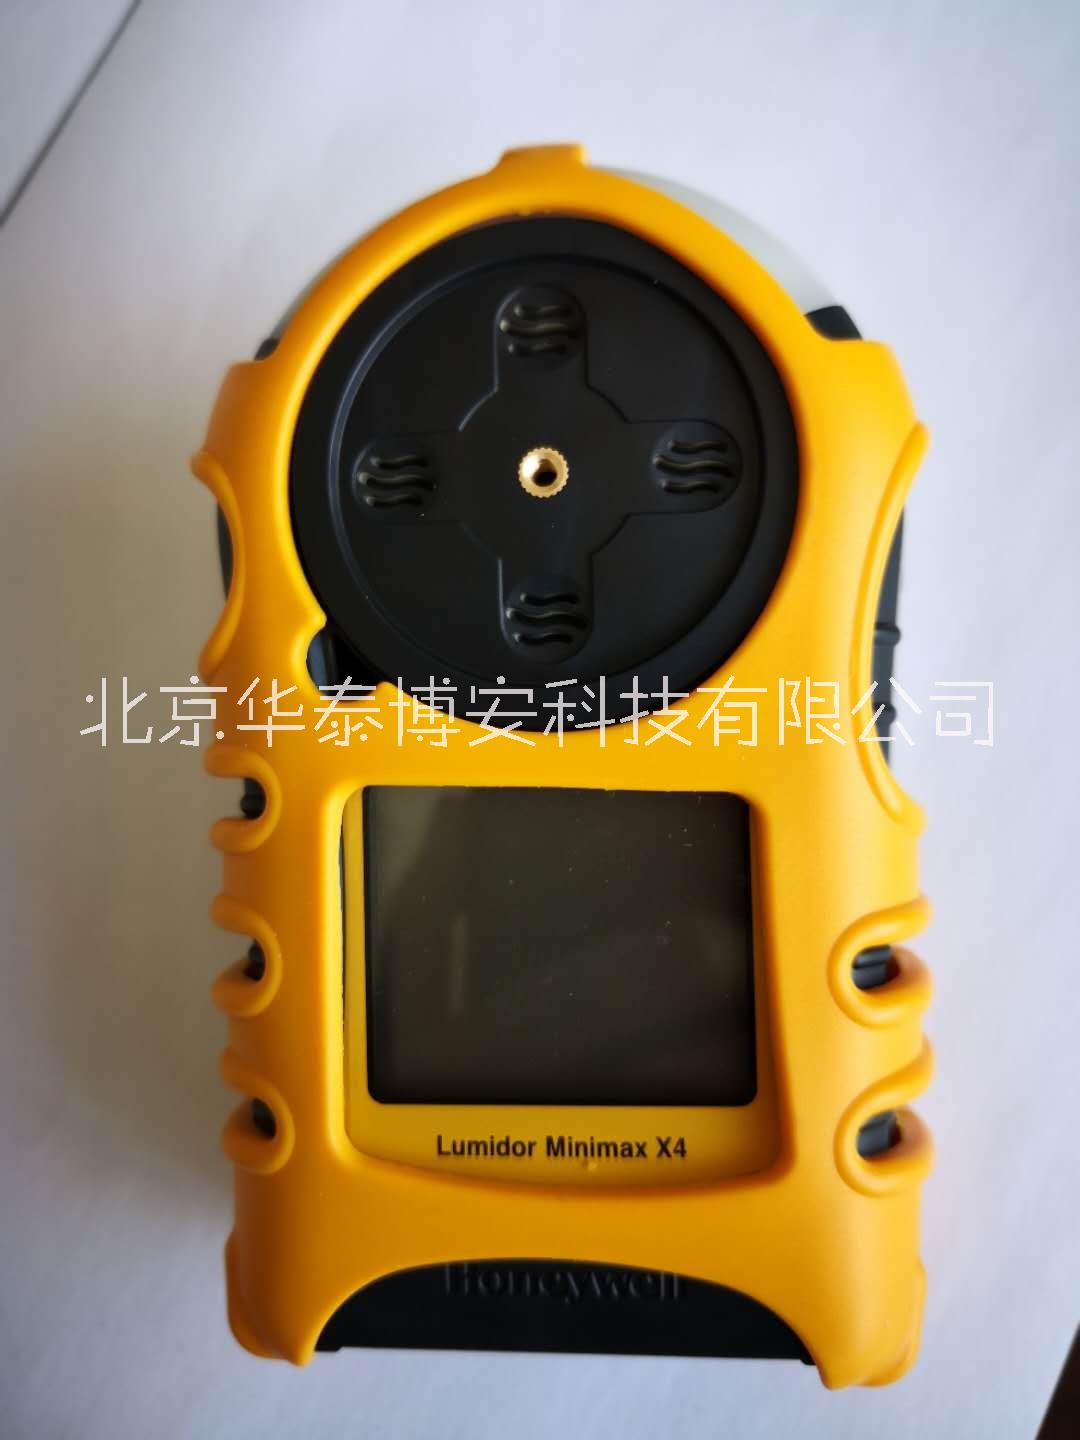 霍尼韦尔Minimax X4便携式四合一气体检测仪多气体报警仪图片